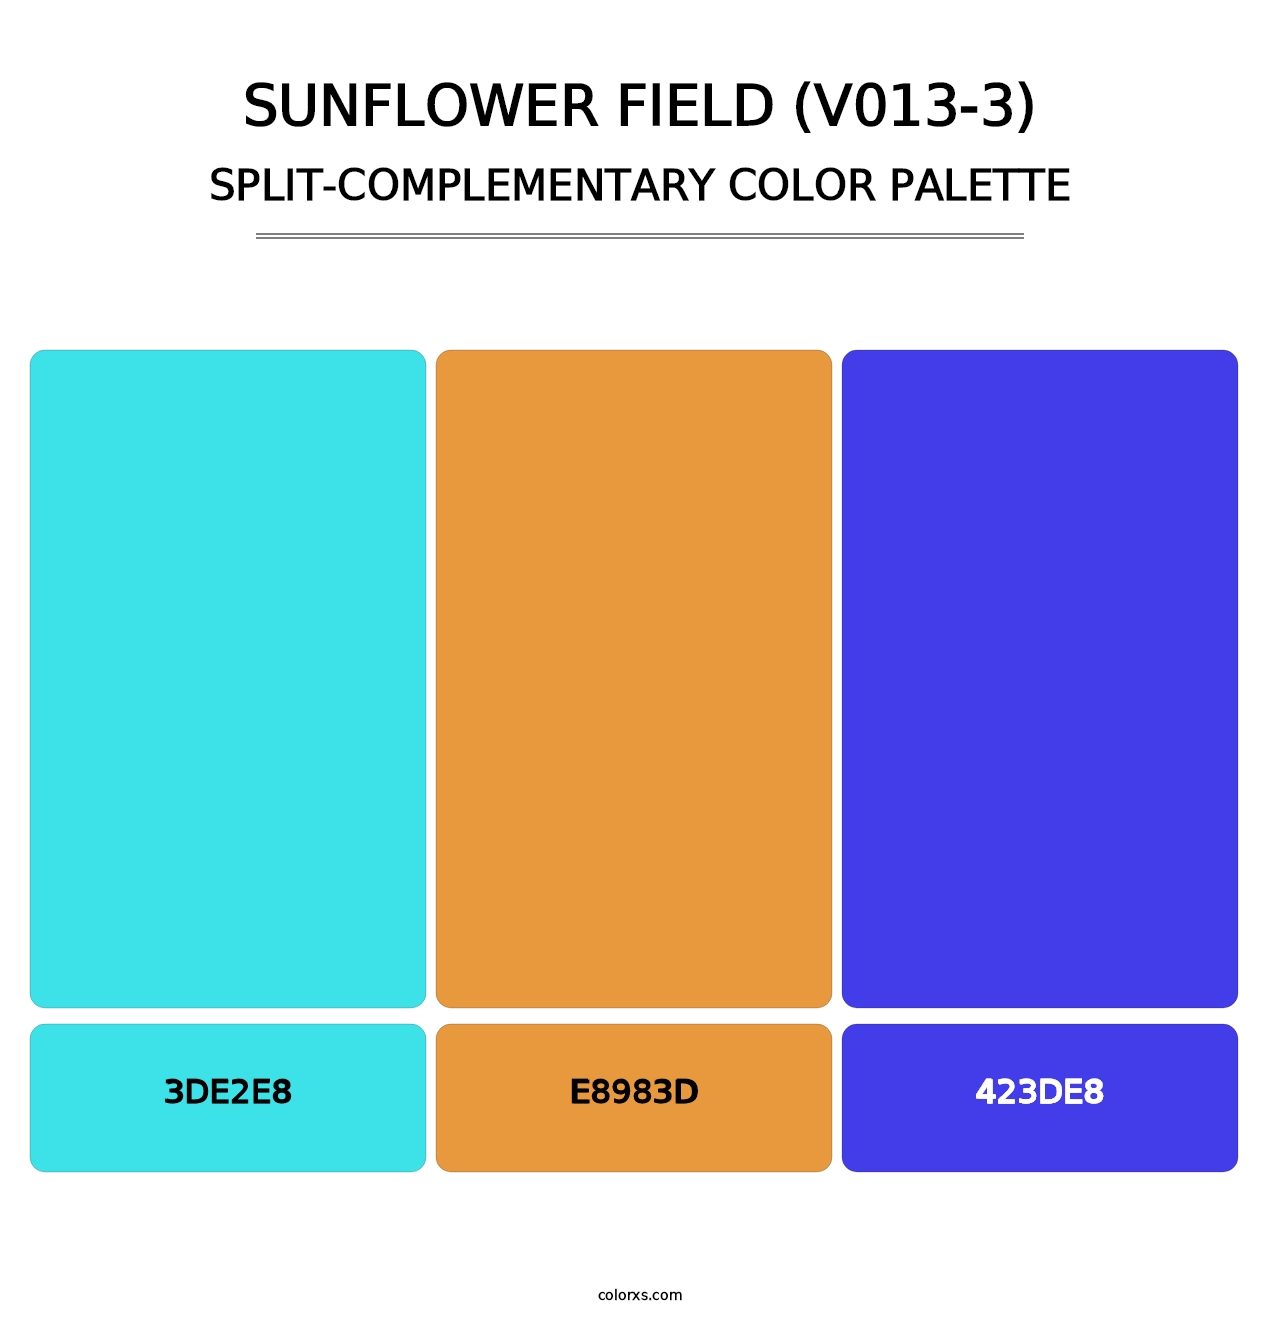 Sunflower Field (V013-3) - Split-Complementary Color Palette